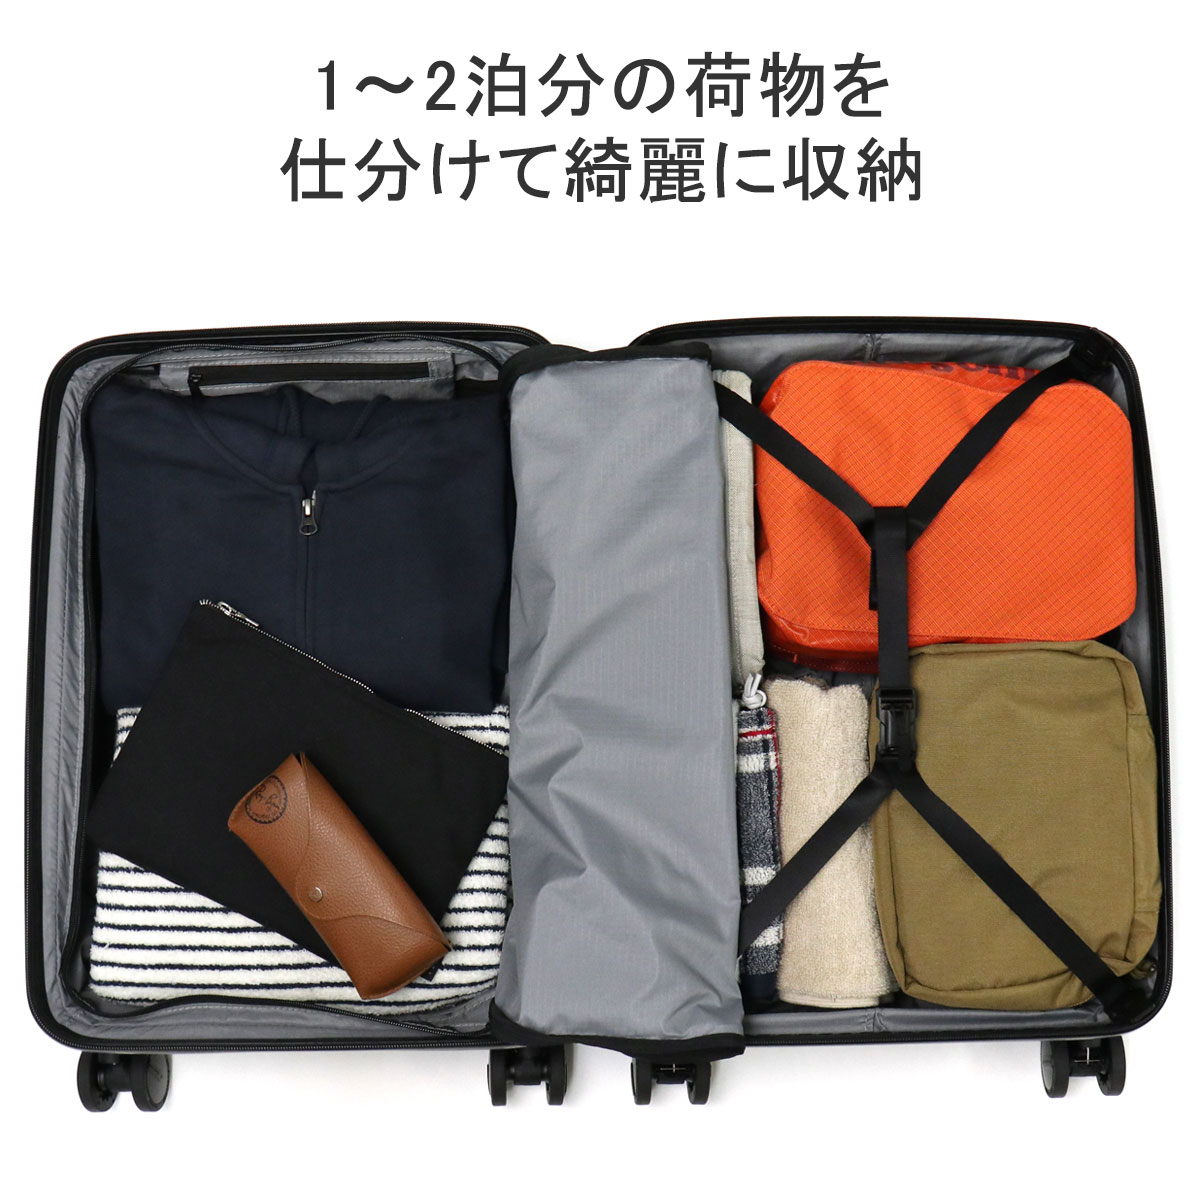 最大36%☆5/7限定 日本正規品 ブリーフィング スーツケース 機内 